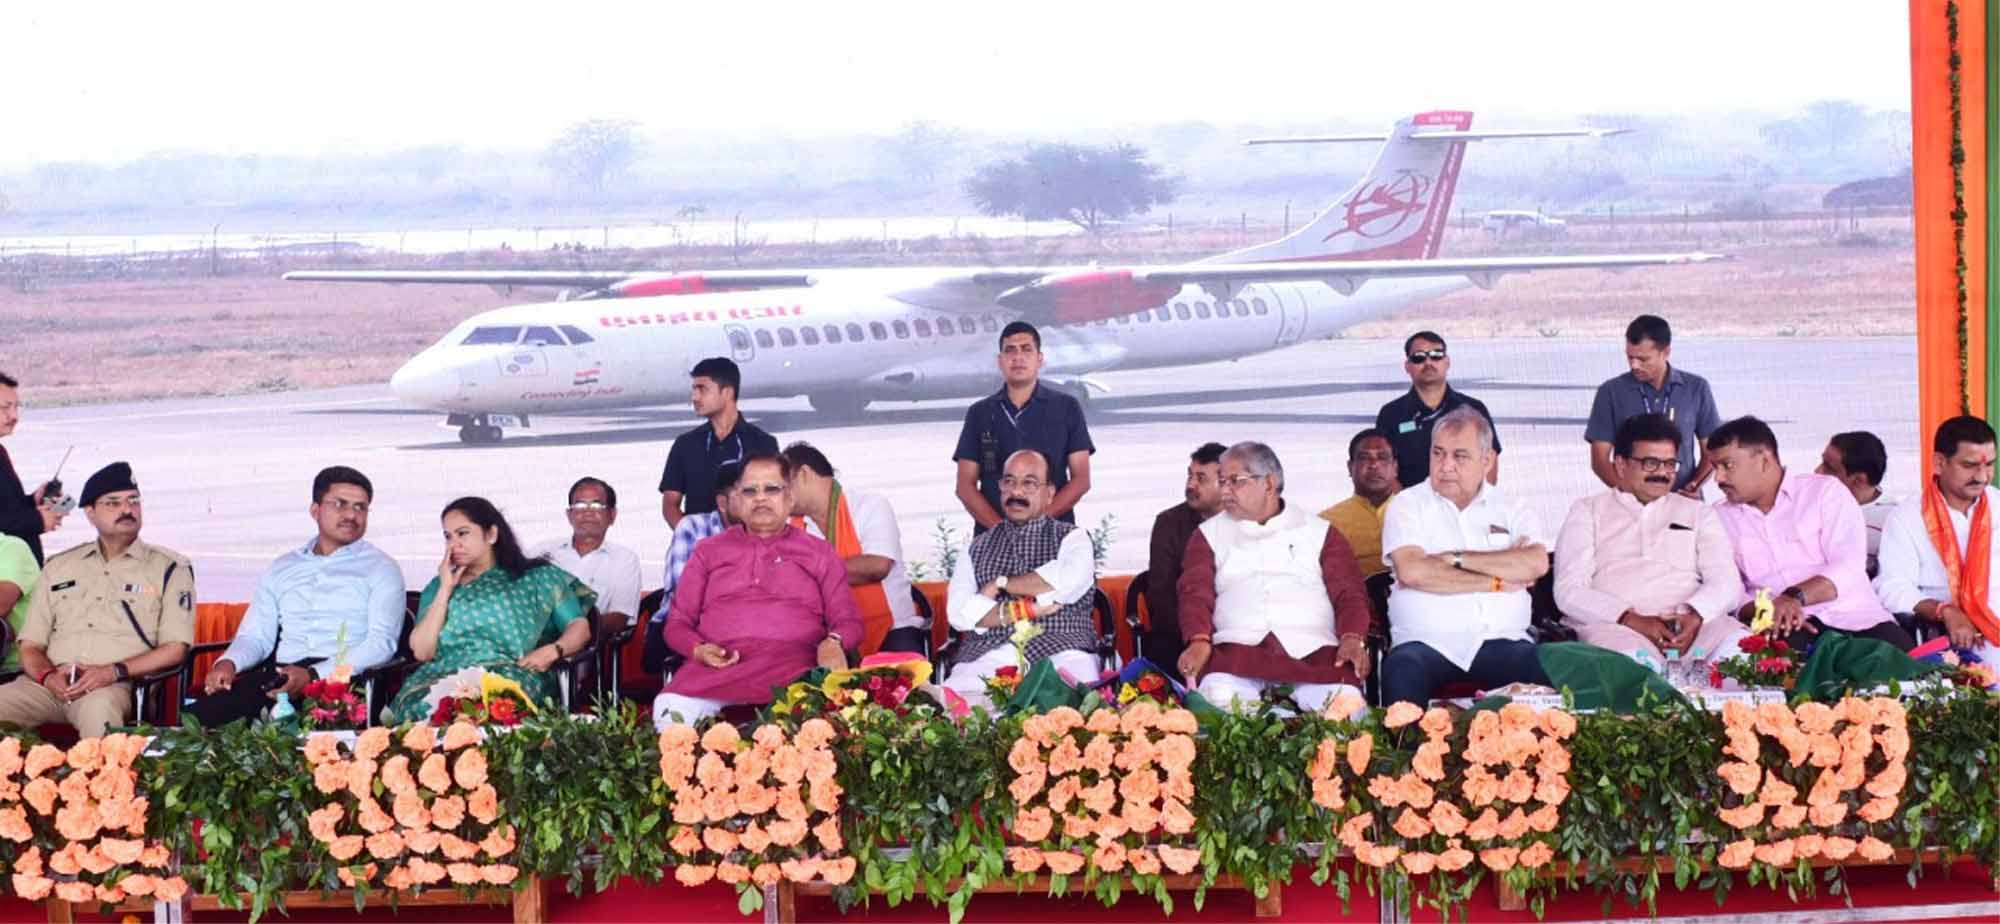 मुख्यमंत्री ने बिलासपुर-दिल्ली और बिलासपुर-कोलकाता सीधी हवाई सेवा का किया शुभारंभ